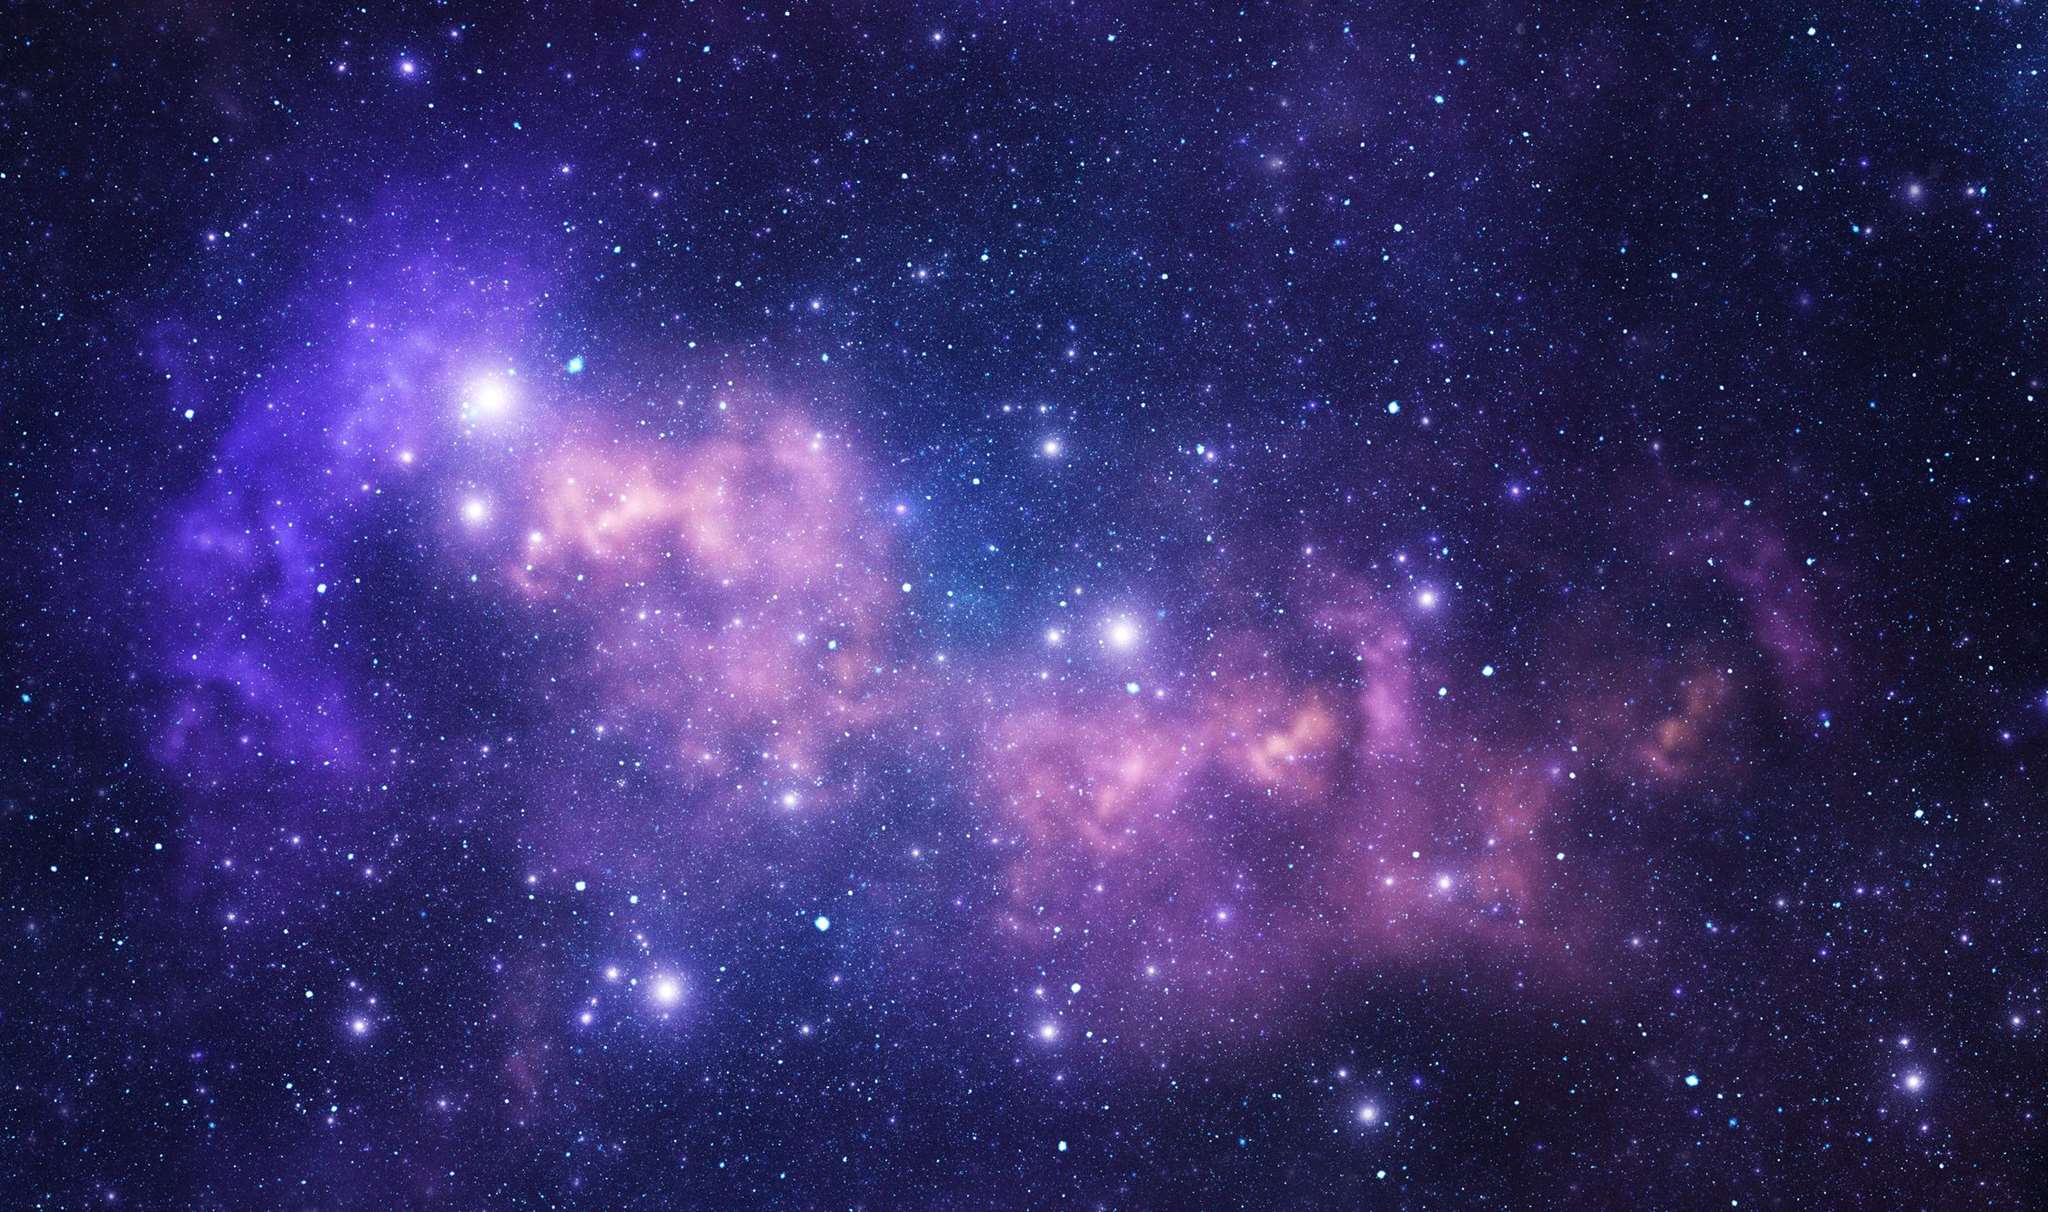 «Είμαστε στα πρόθυρα της εισόδου στο ίδιο το Σύμπαν» λέει διάσημος οραματιστής του διαστήματος